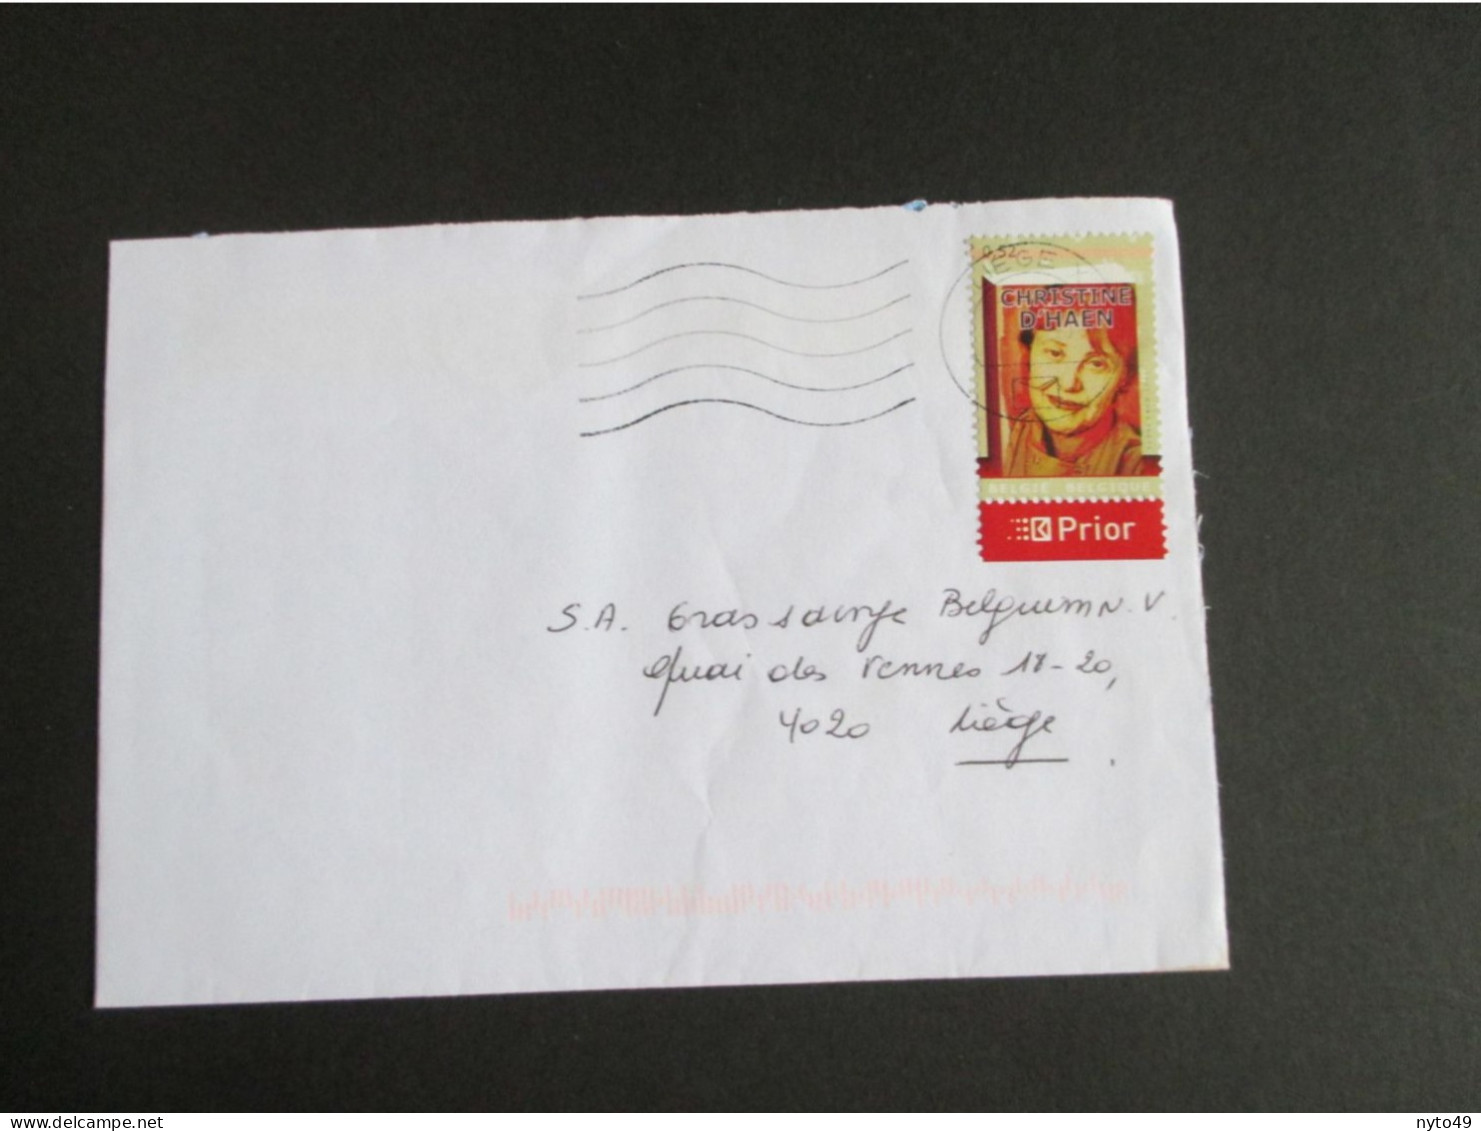 Jaar 2007 - Nr 3618 - Schrijfster Christine D'Haen - Alleen Op Brief Verstuurd Binnen Liège - Briefe U. Dokumente